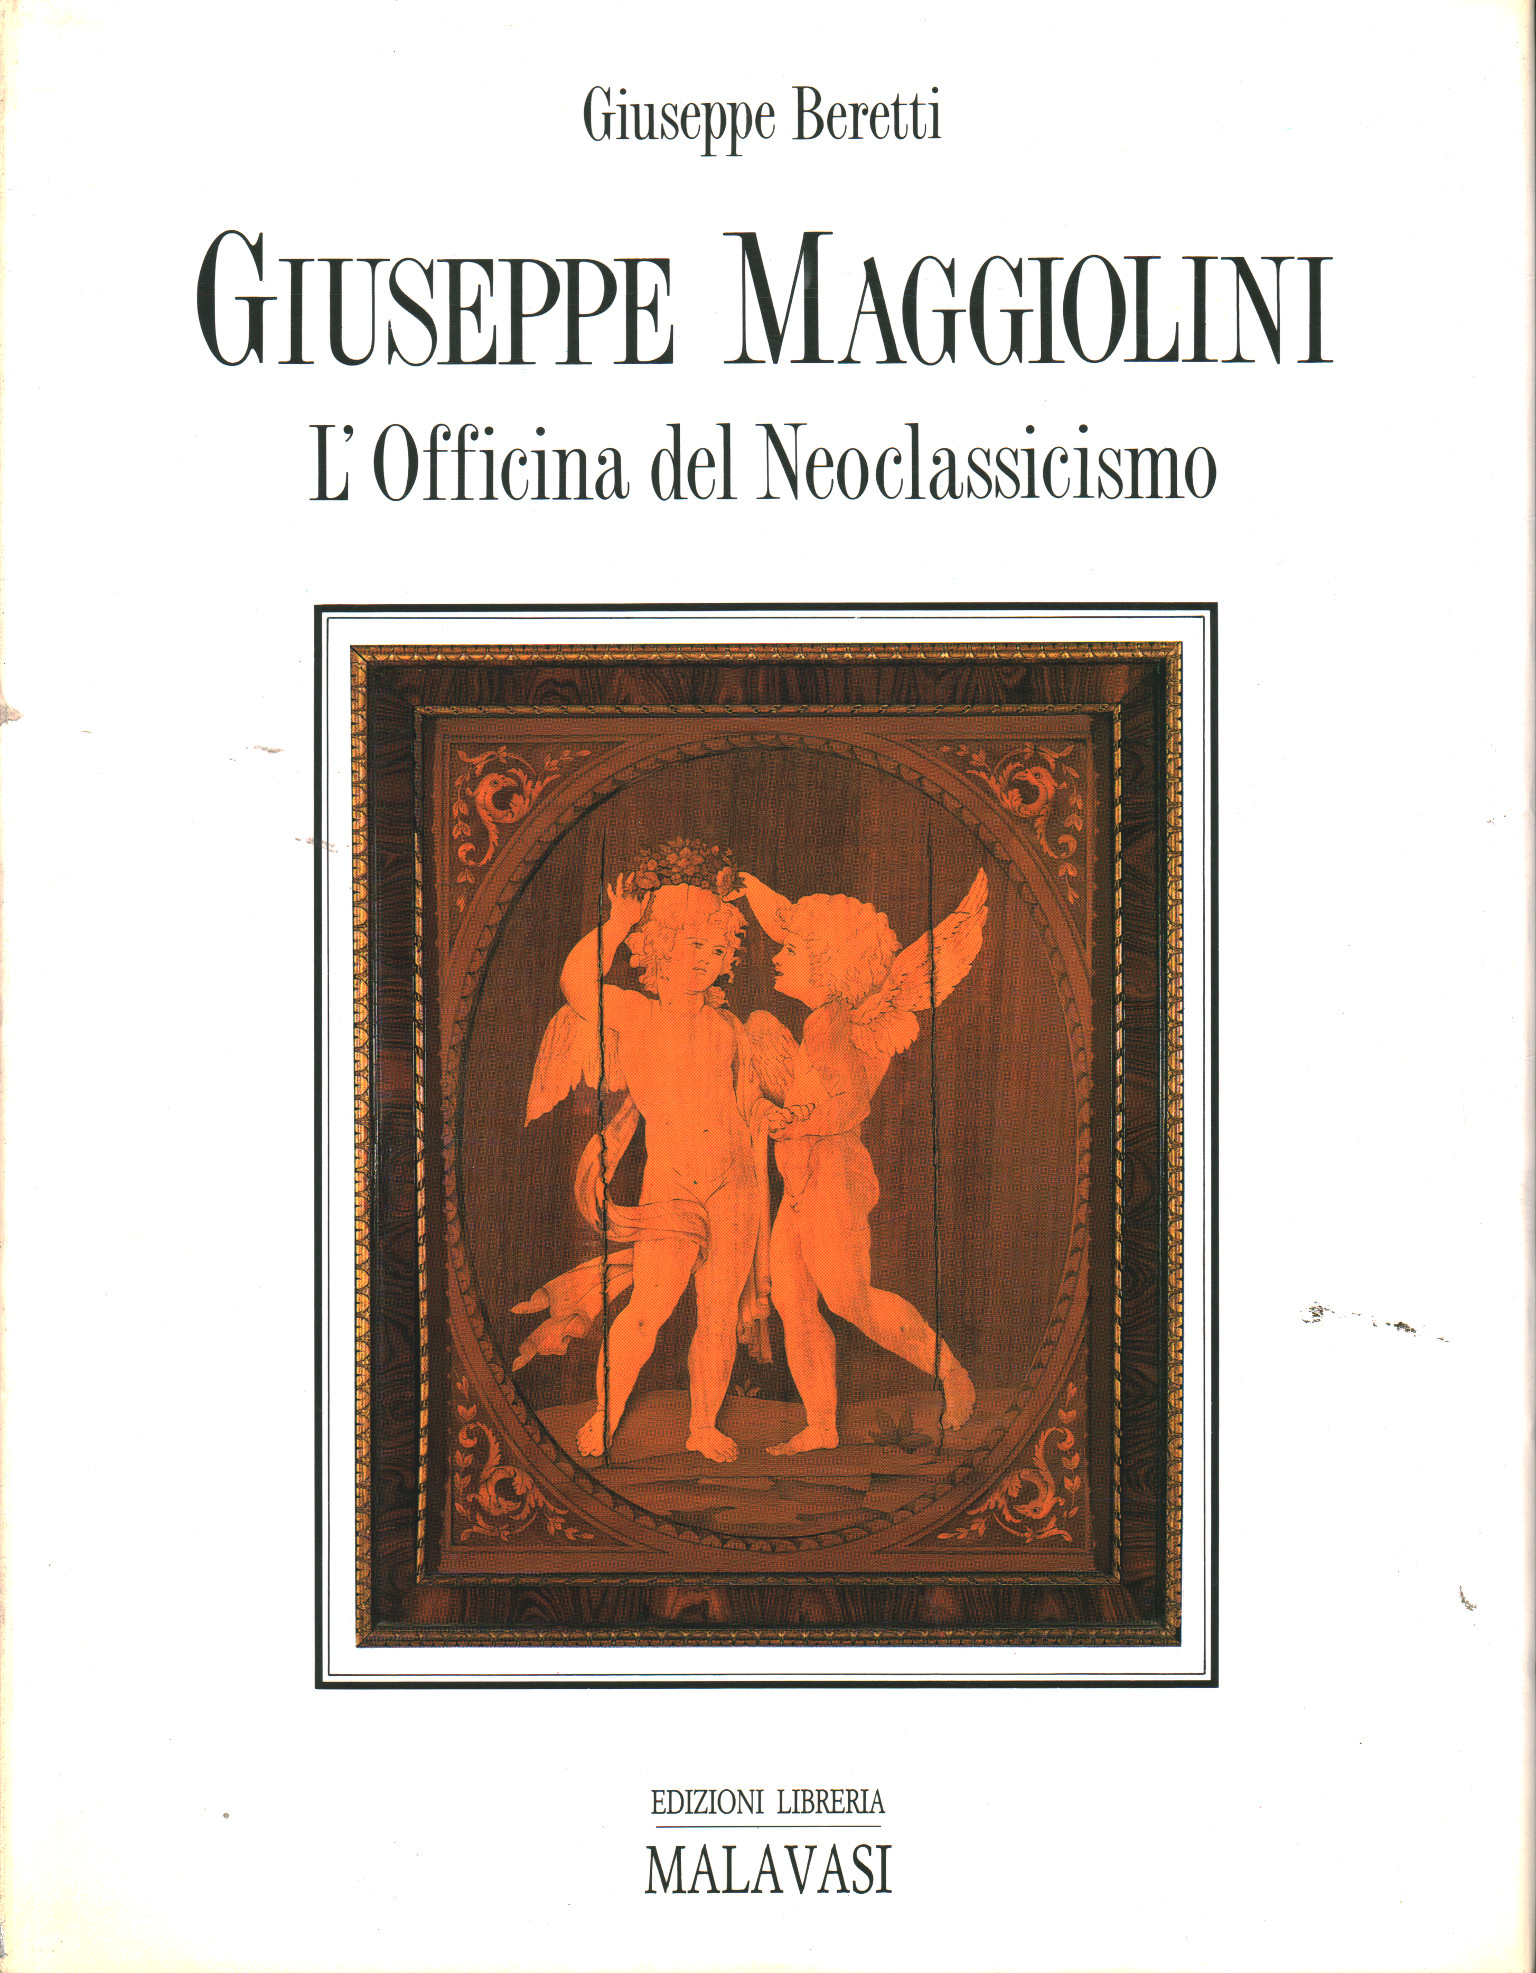 Giuseppe and Carlo Francesco Maggiolini, Giuseppe Beretti